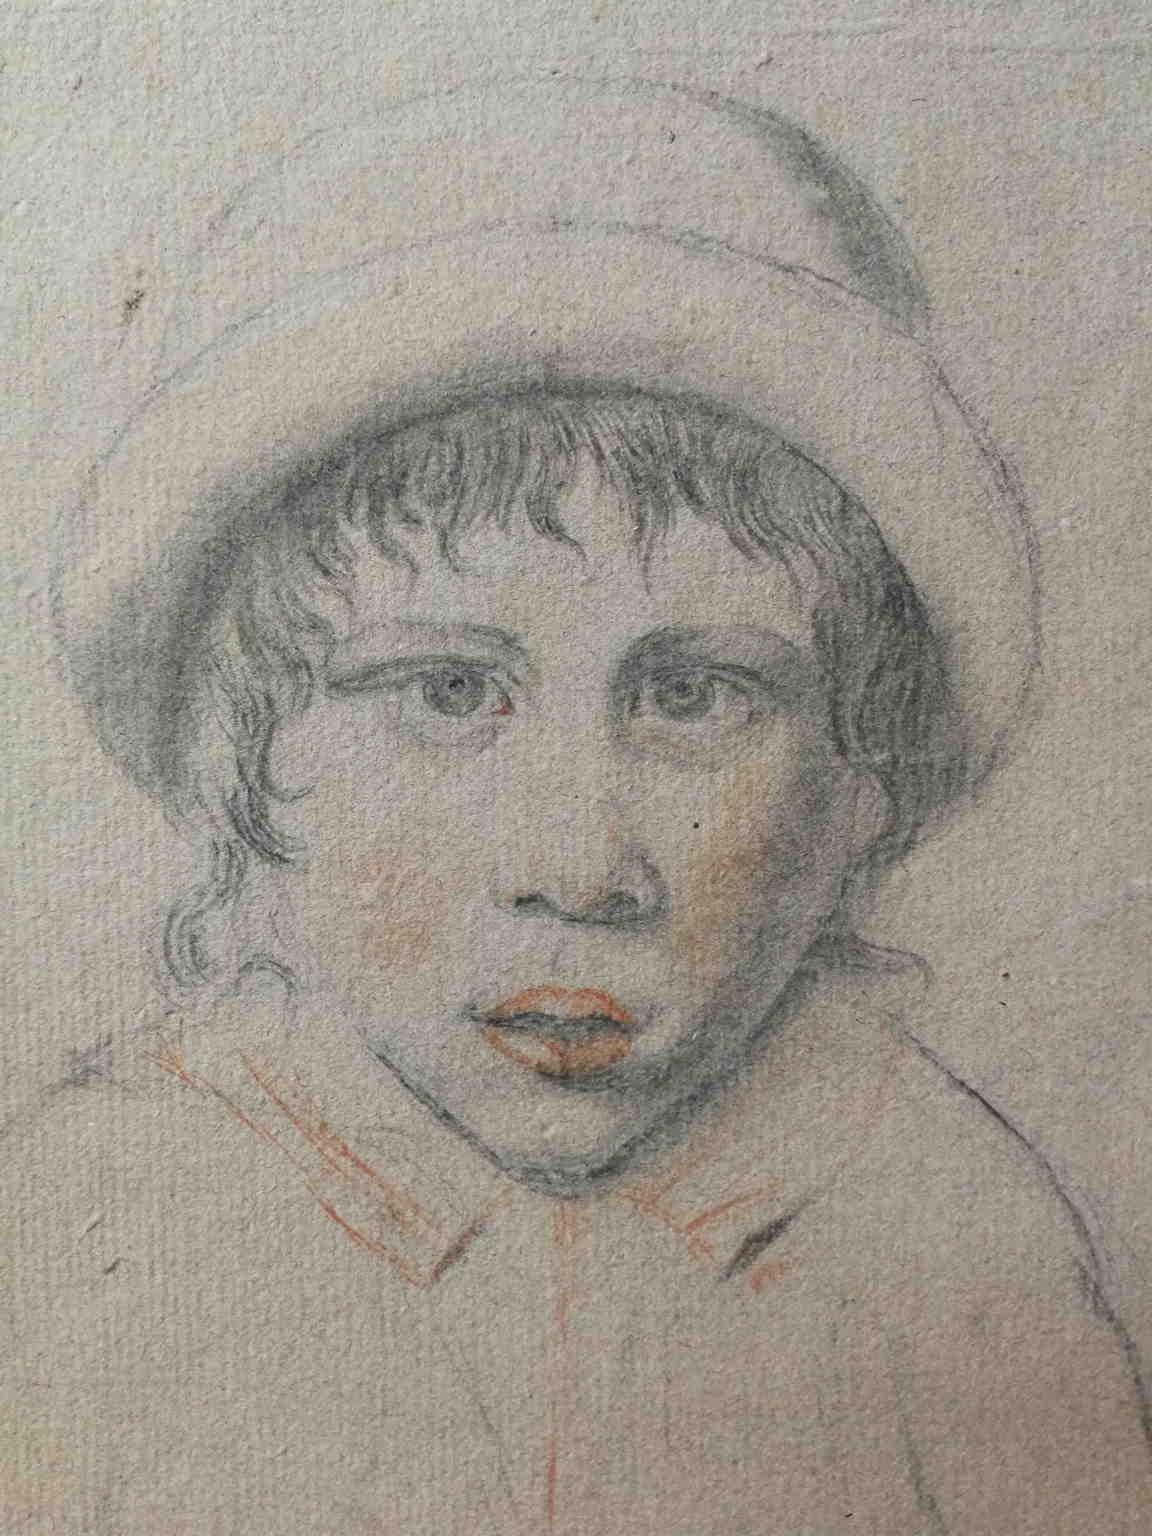 Disegno matite su carta ritratto di fanciullo con cappellino del XVIII secolo - Other Art Style Art by Unknown